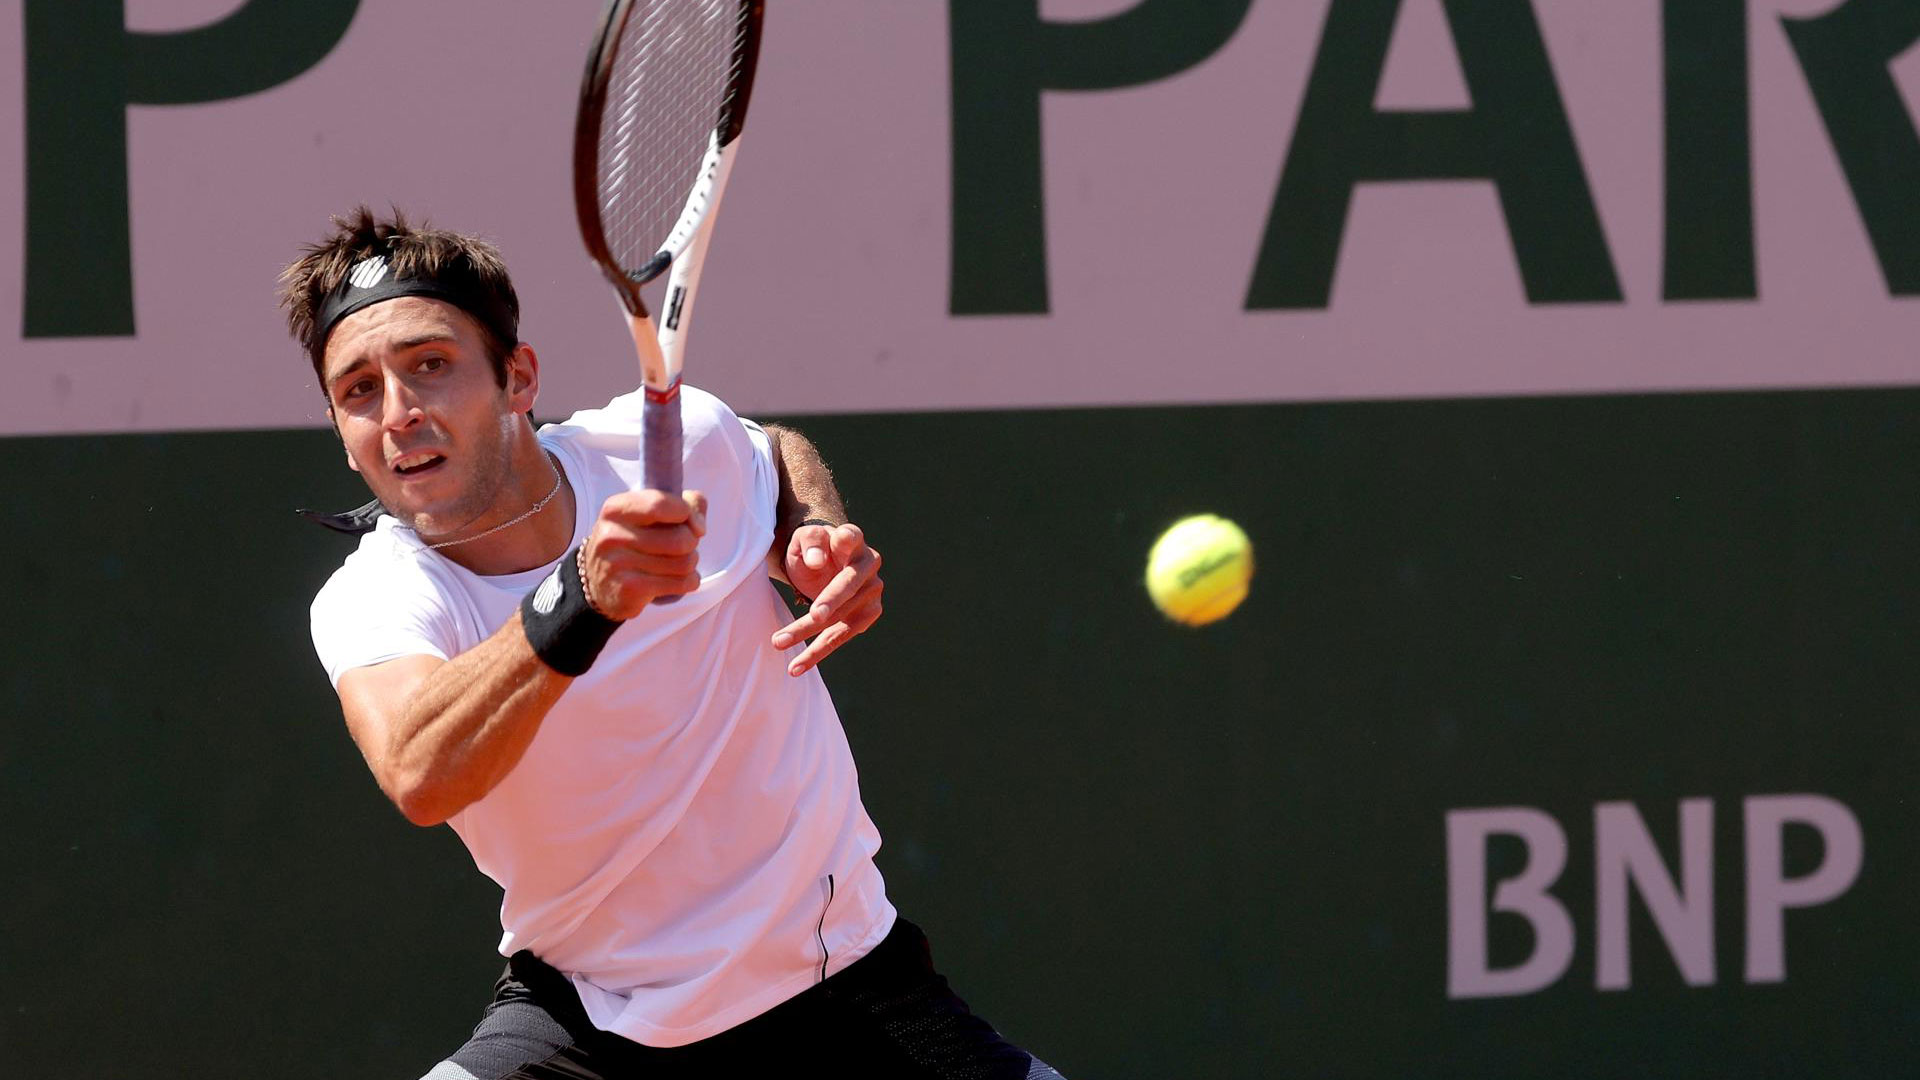 El argentino Tomás Etcheverry dio el golpe del día en Roland Garros: eliminó al 19 del mundo